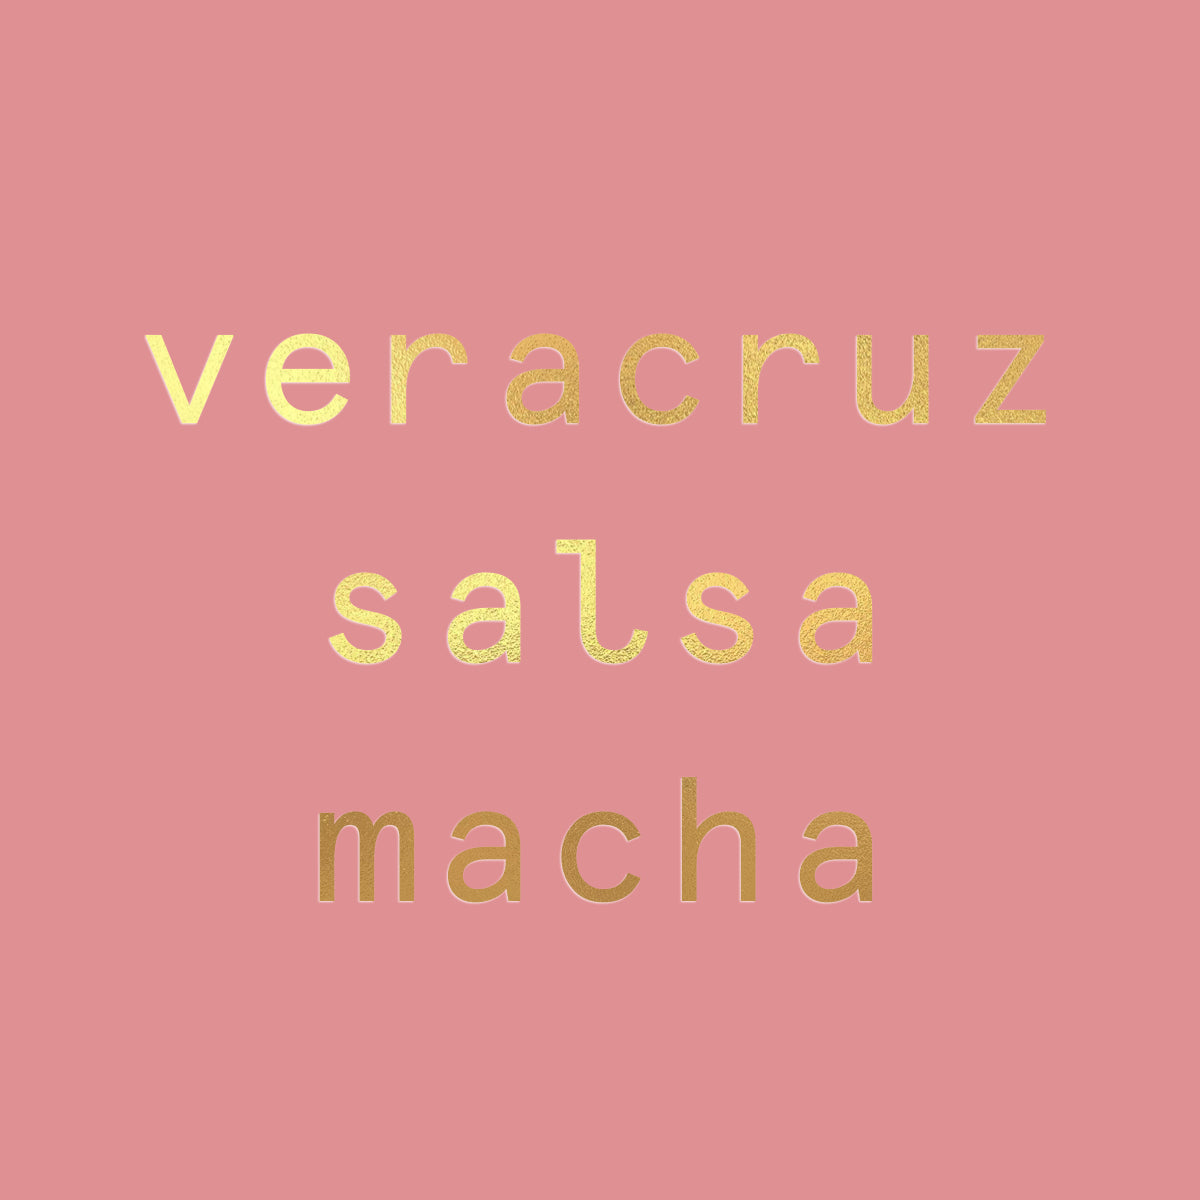 Veracruz Salsa Macha